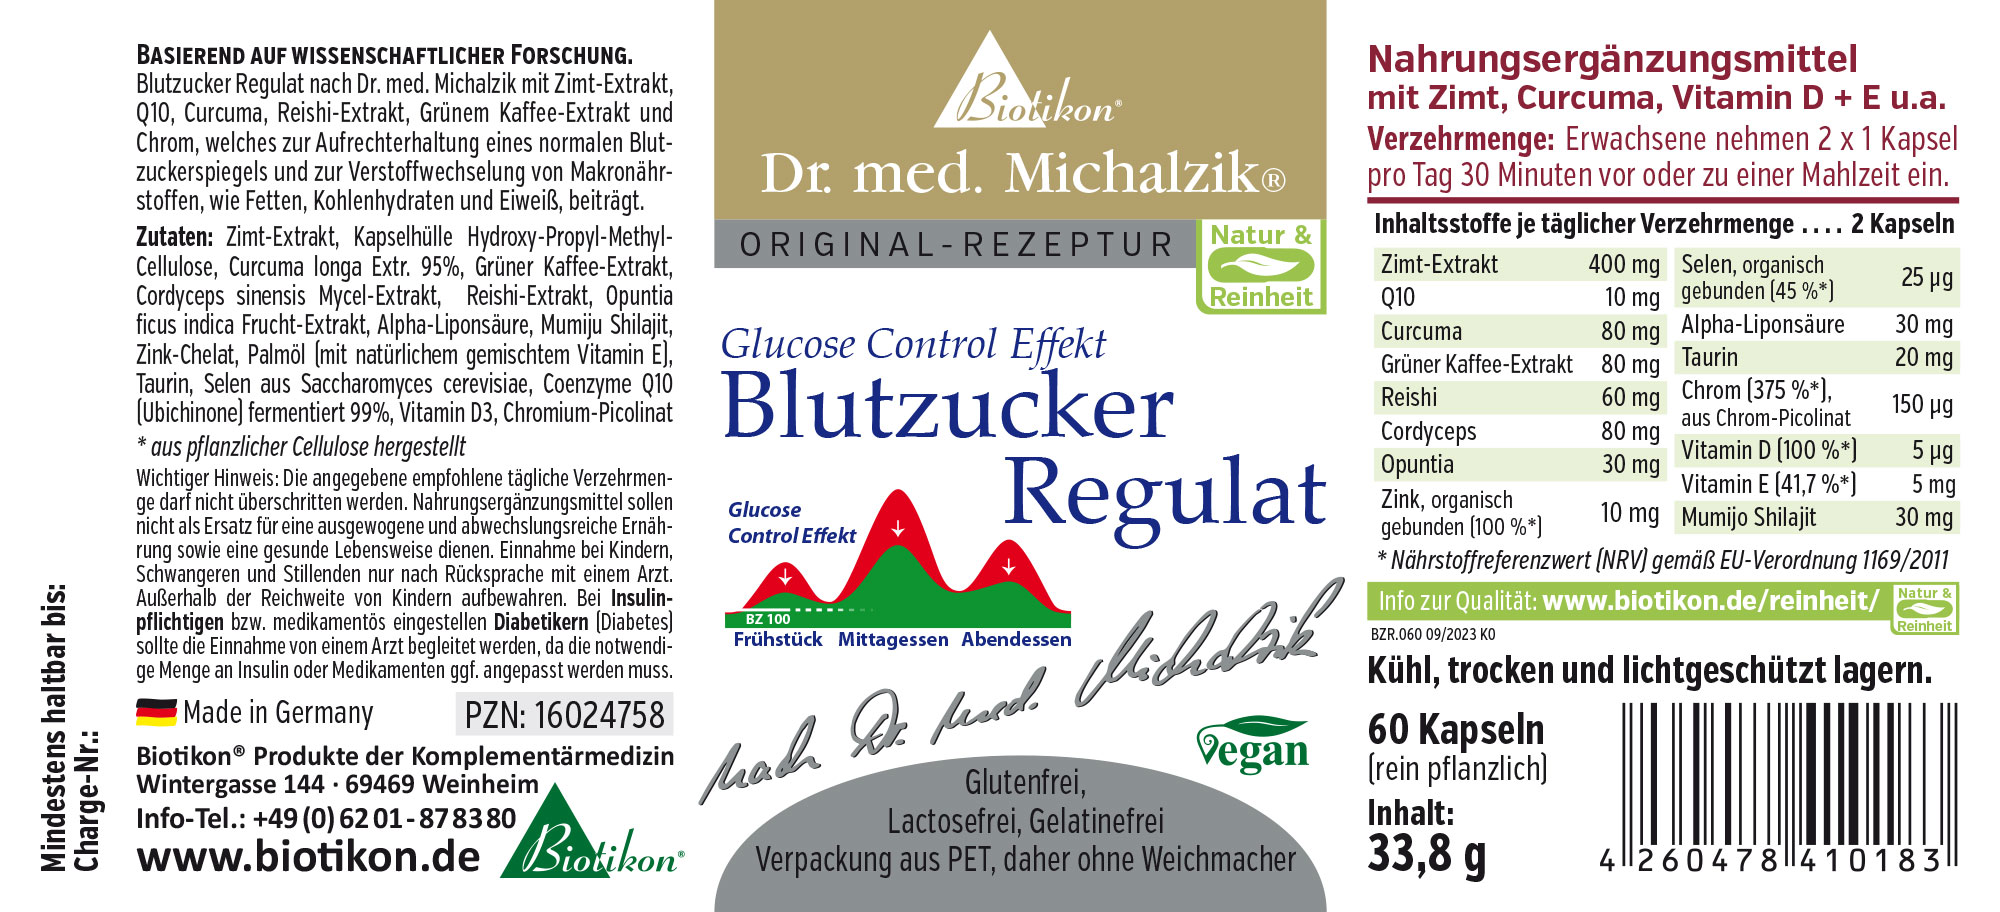 Blutzucker Regulat nach Dr. med. Michalzik